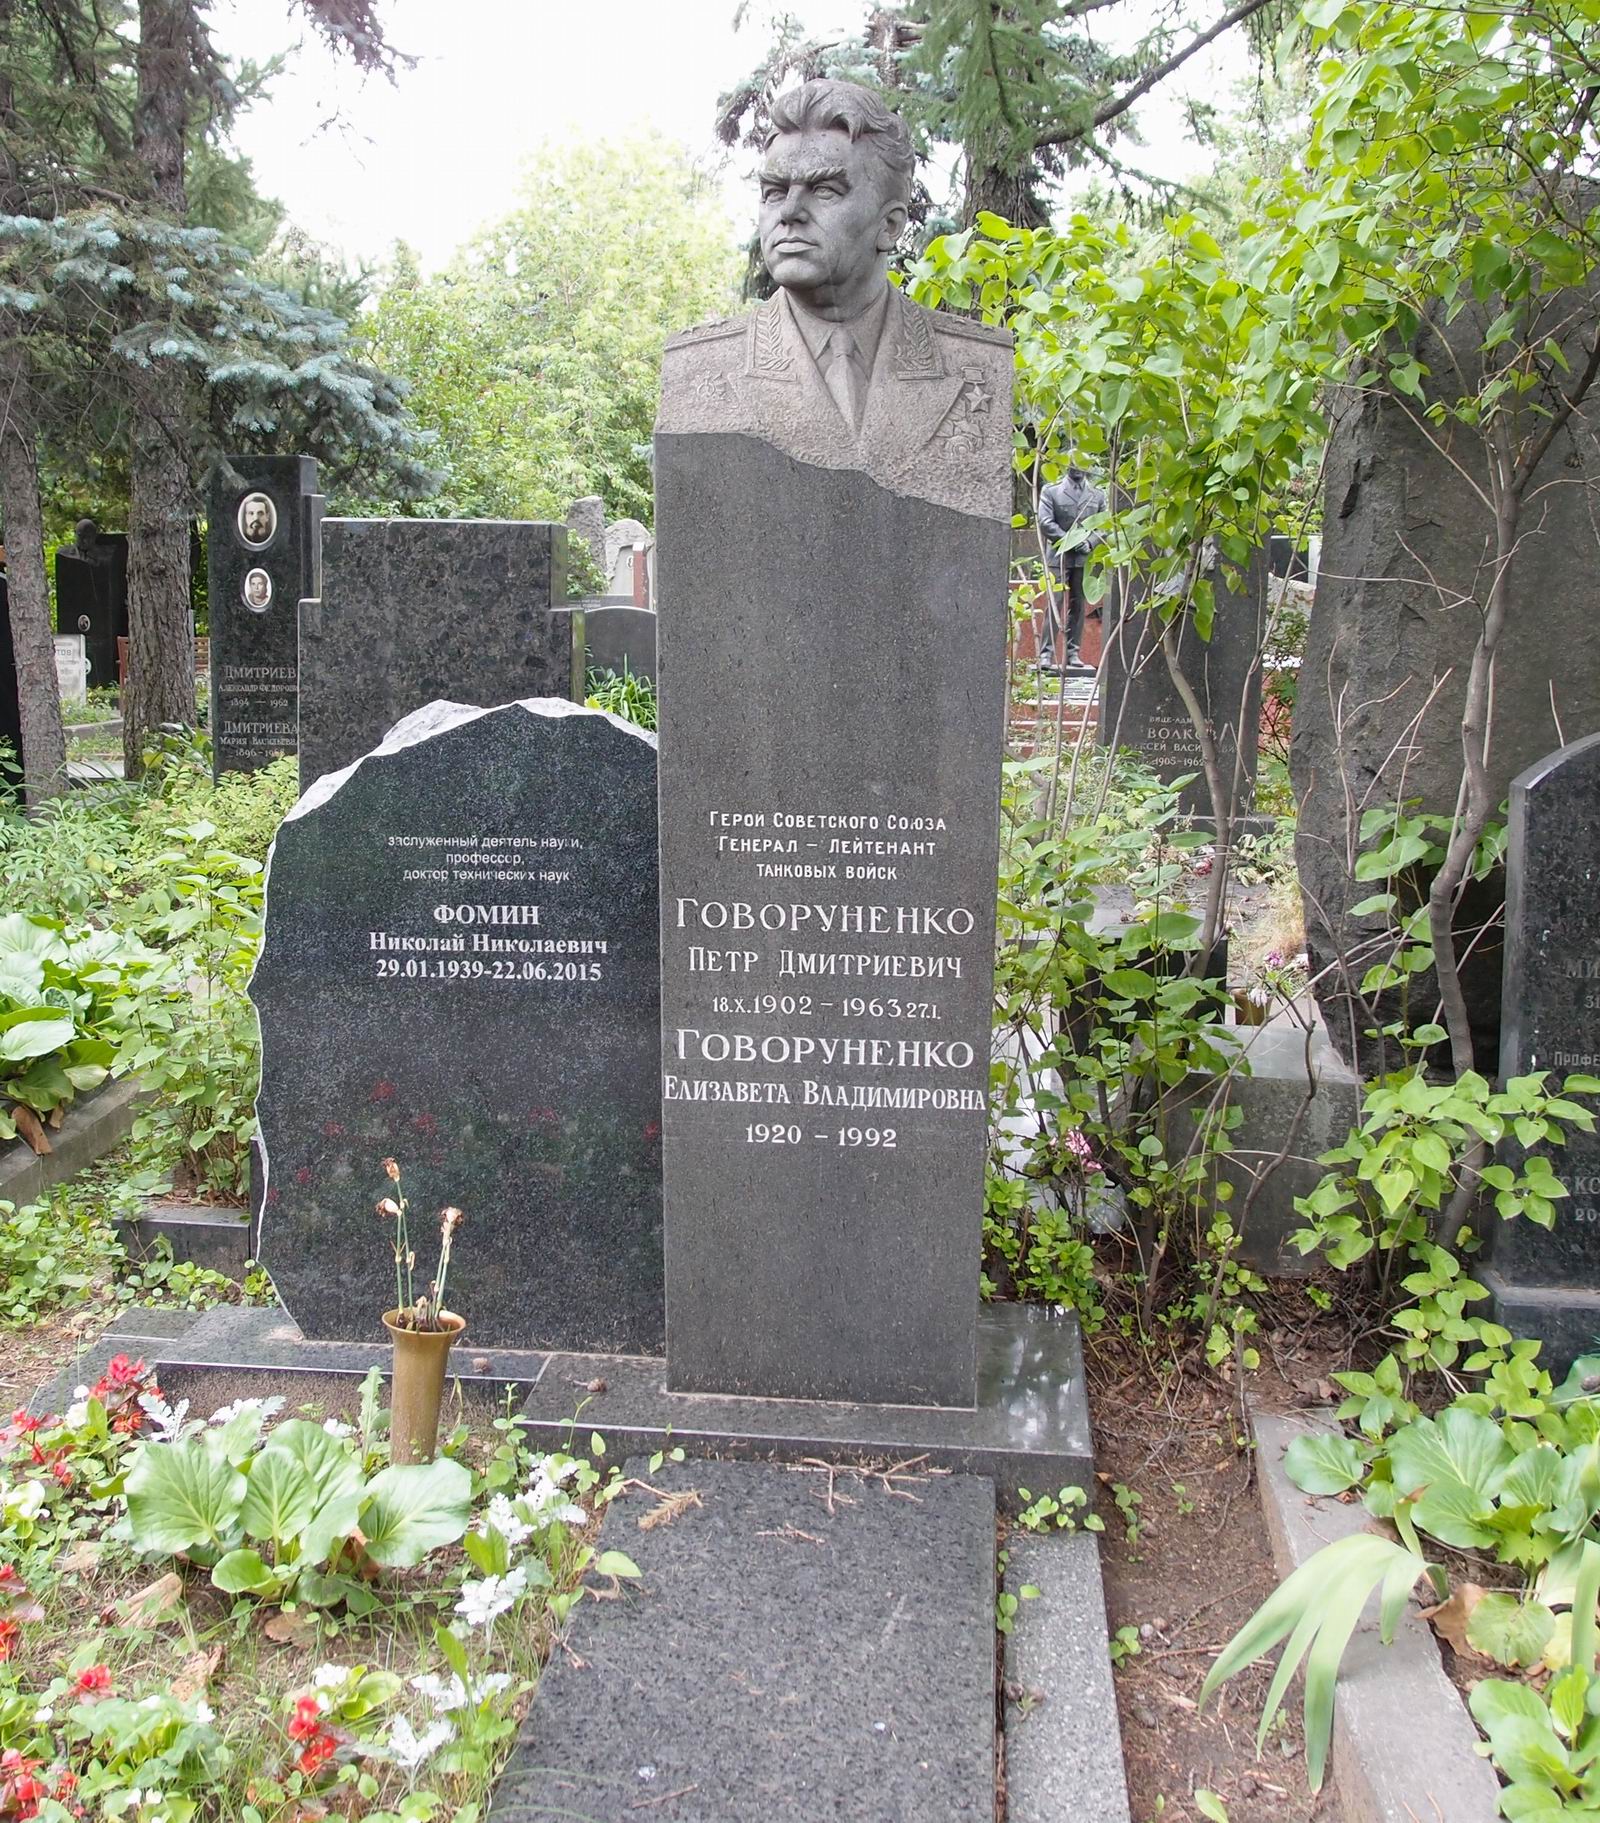 Памятник на могиле Говоруненко П.Д. (1902-1963), ск. Г.Постников, на Новодевичьем кладбище (8-22-10).